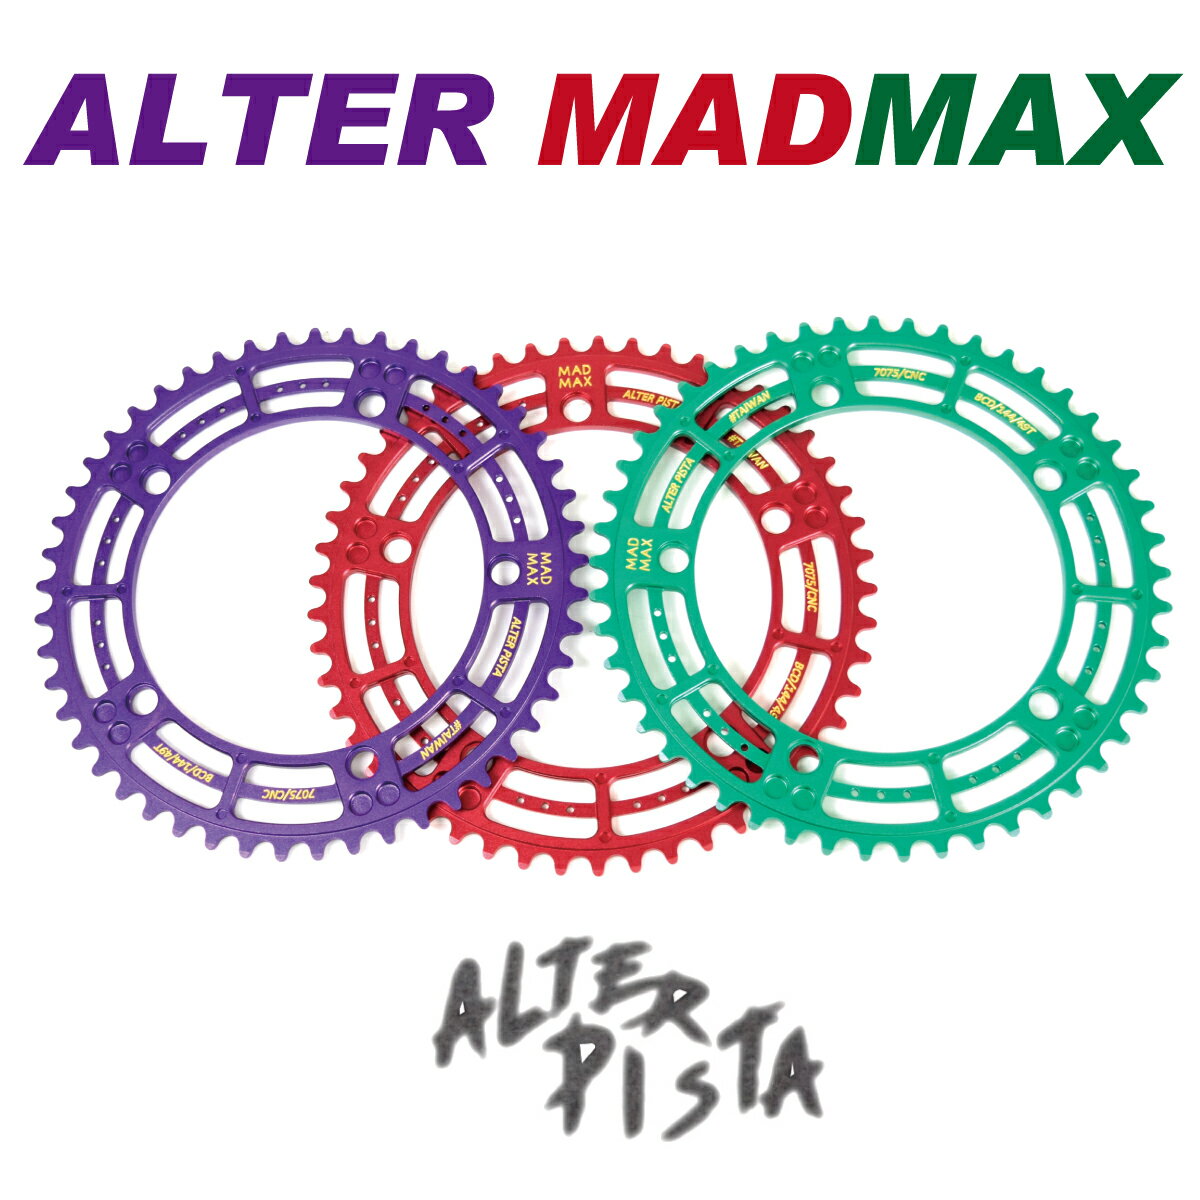 アルター チェーンリング ハロウィーンカラー マッドマックス ALTER CHAINRING MADMAX HALLOWEEN ピストバイク 自転車